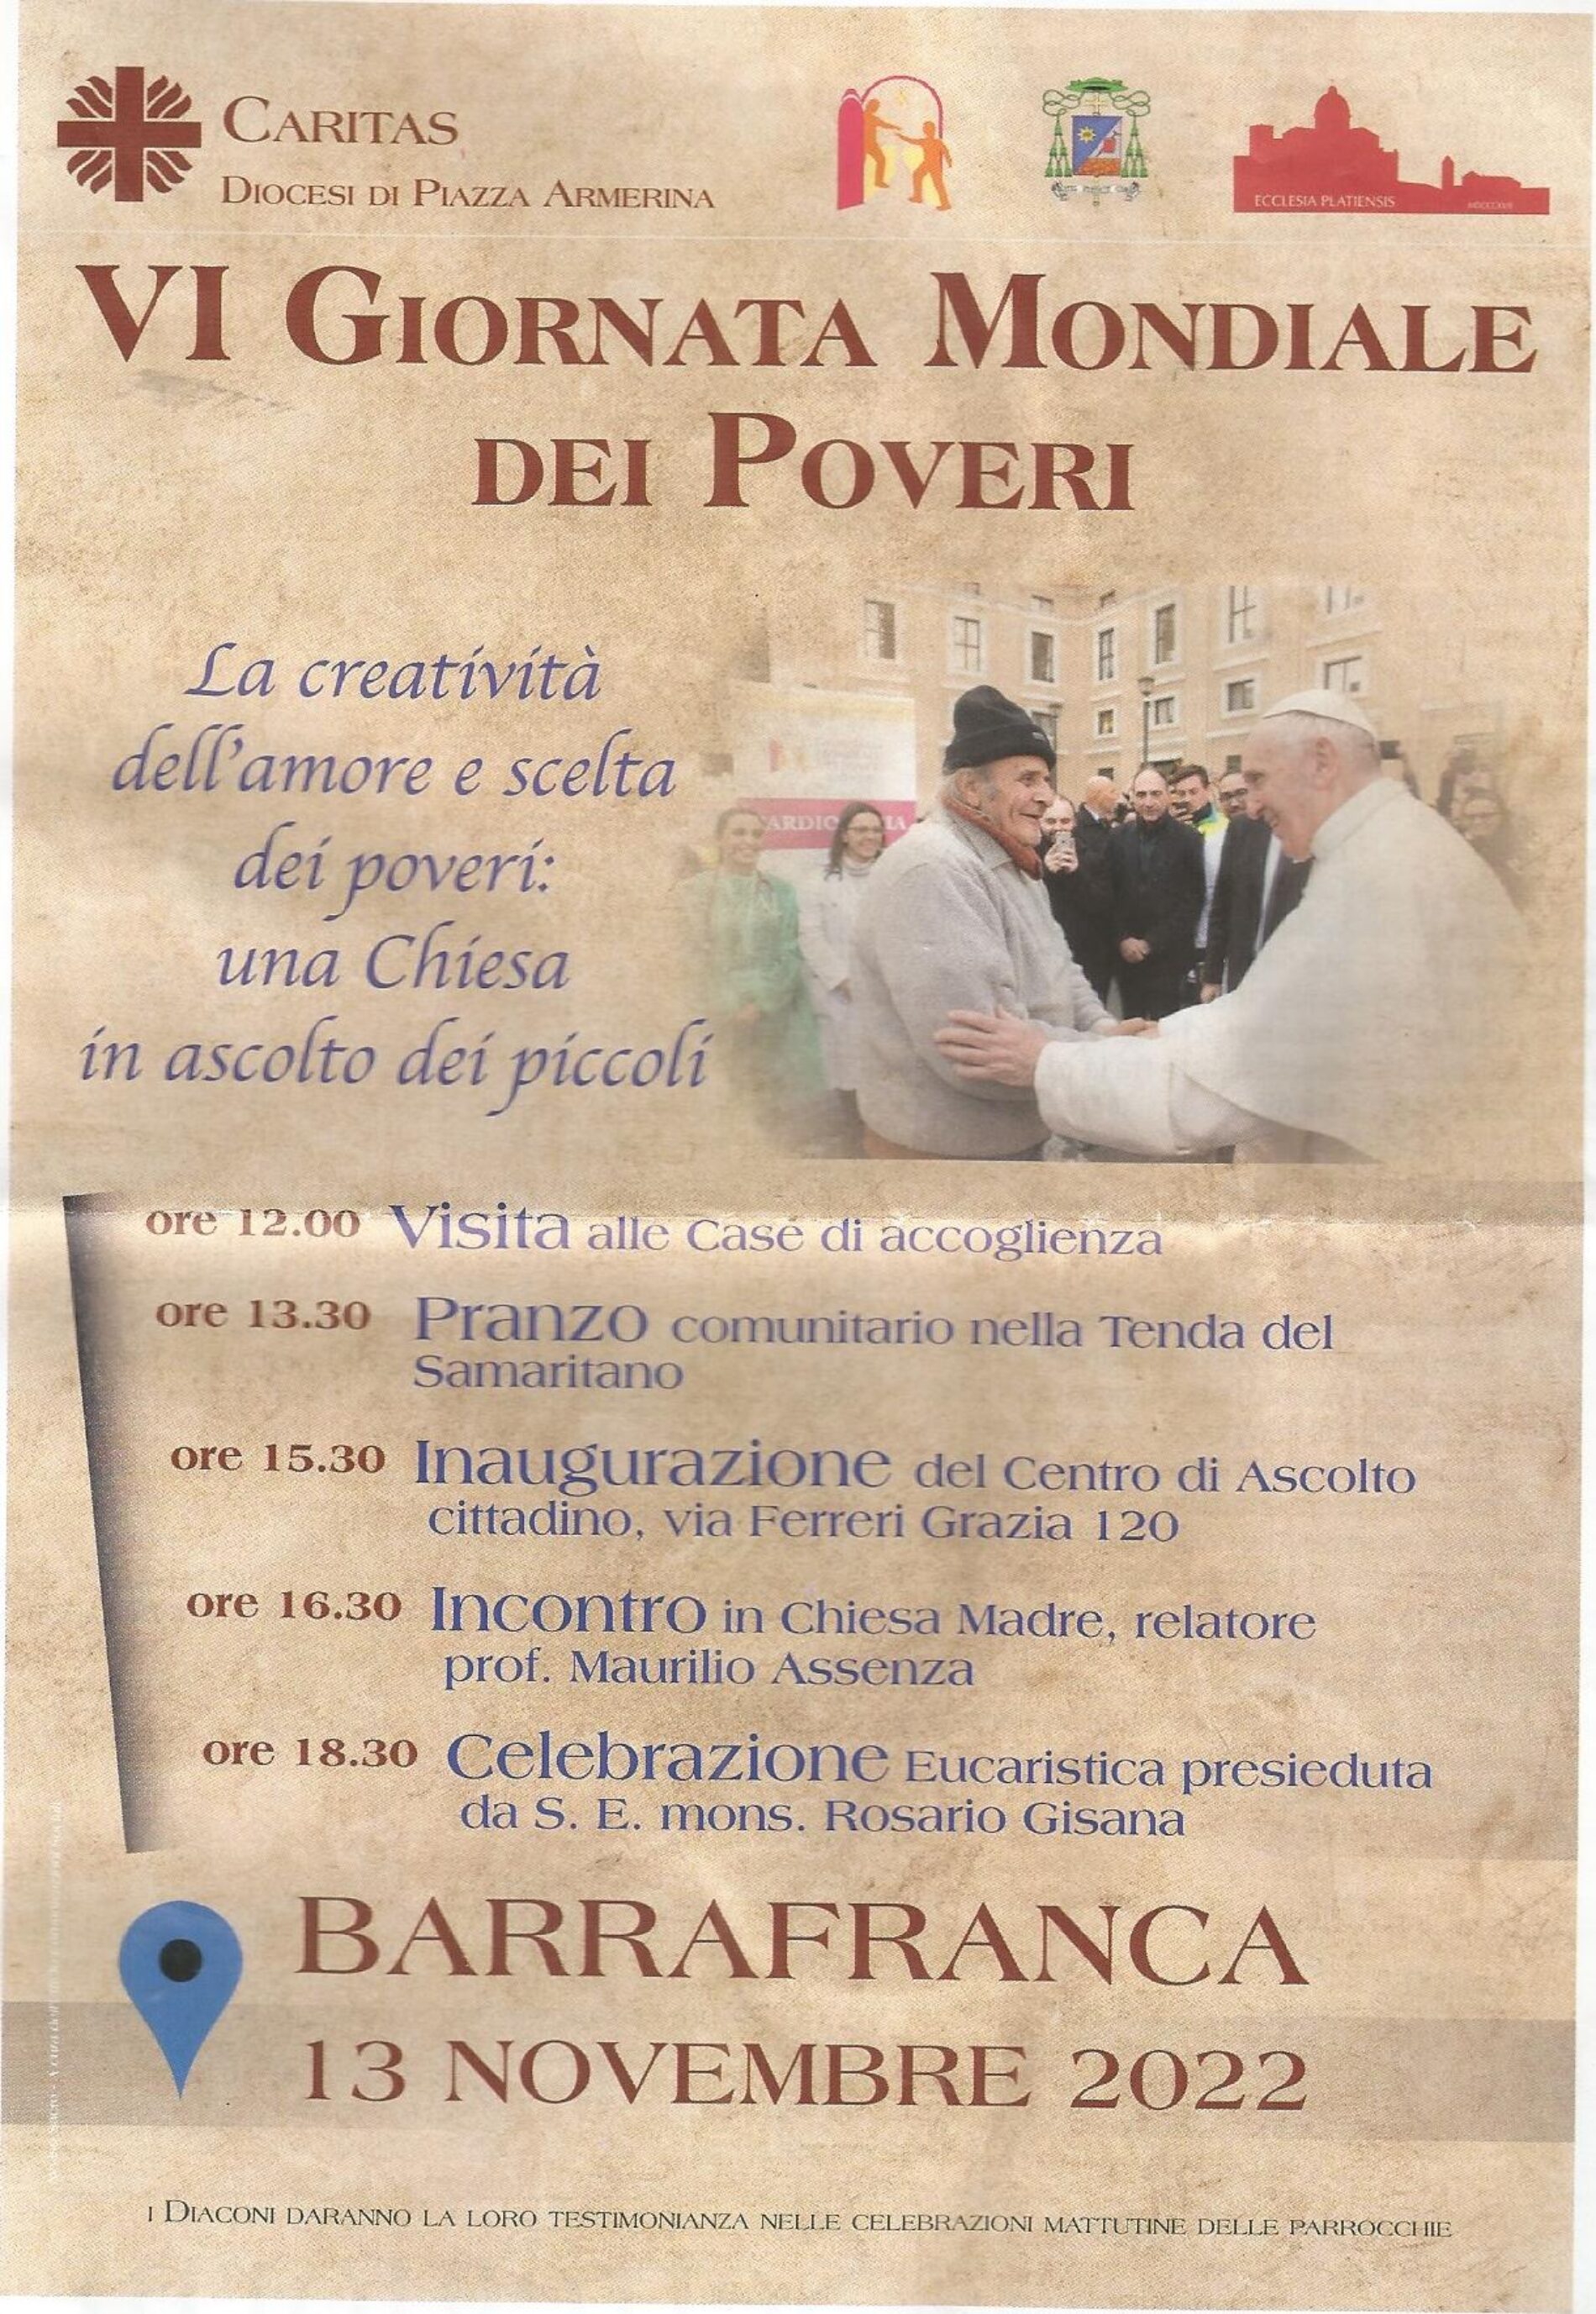 BARRAFRANCA. A Barrafranca VI Giornata Mondiale dei Poveri.